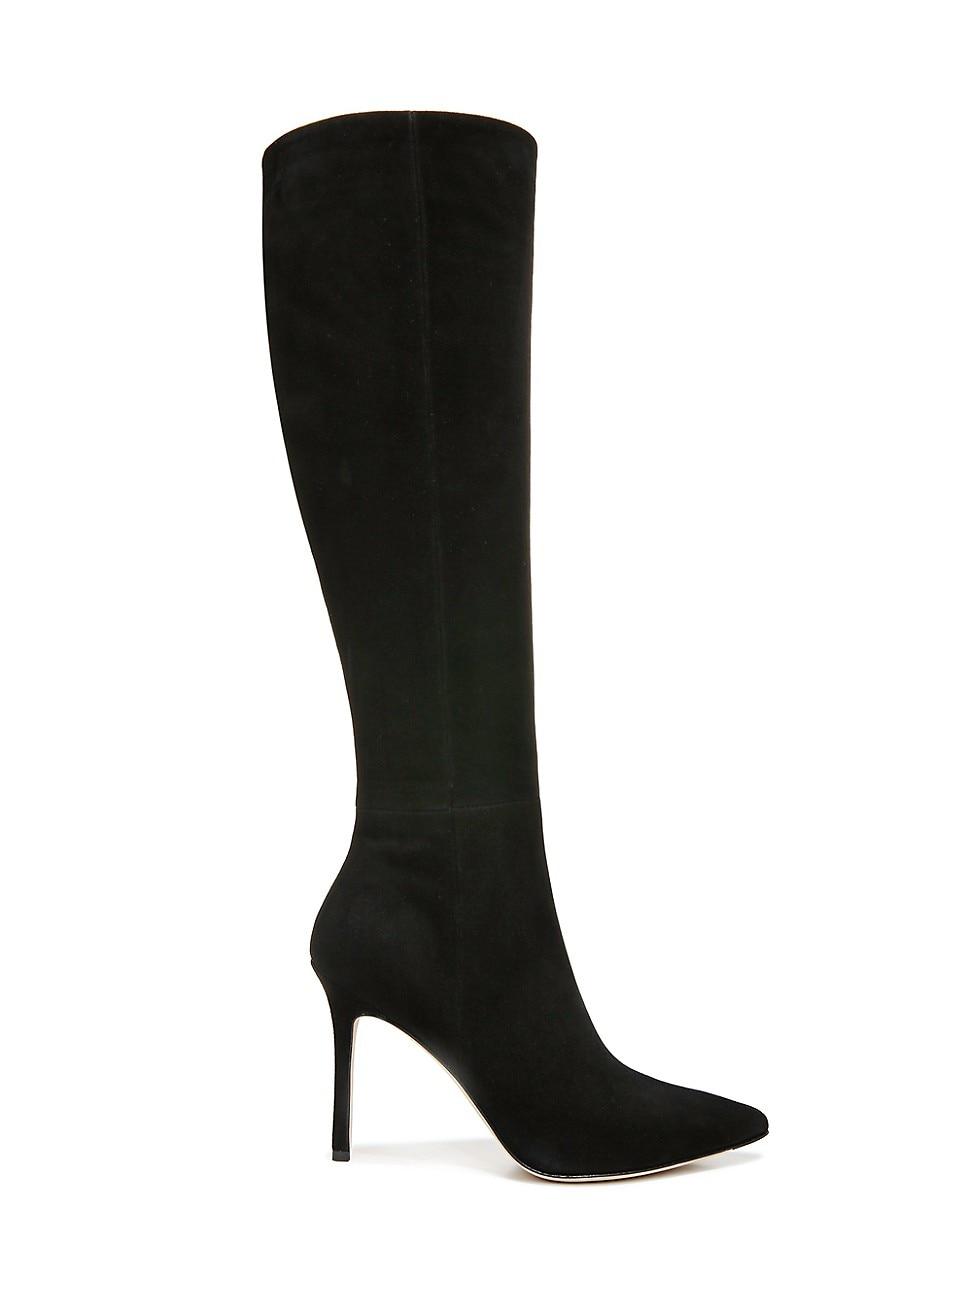 Veronica Beard Lisa Suede Knee-high Boots in Black | Lyst